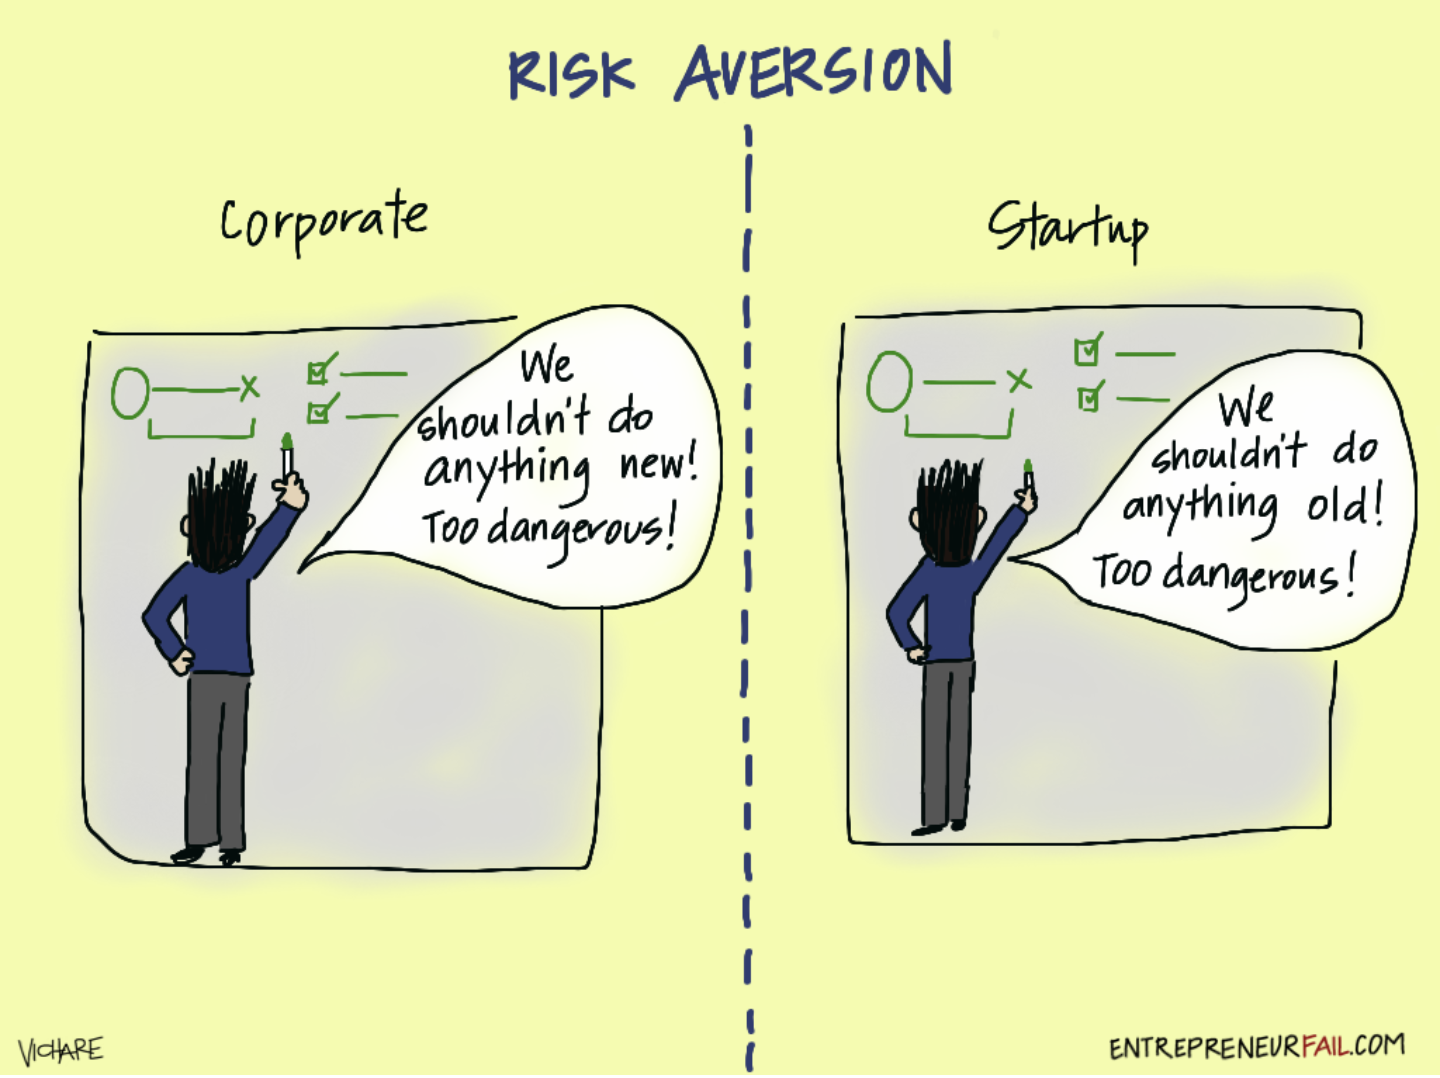 Risk_Aversion.png